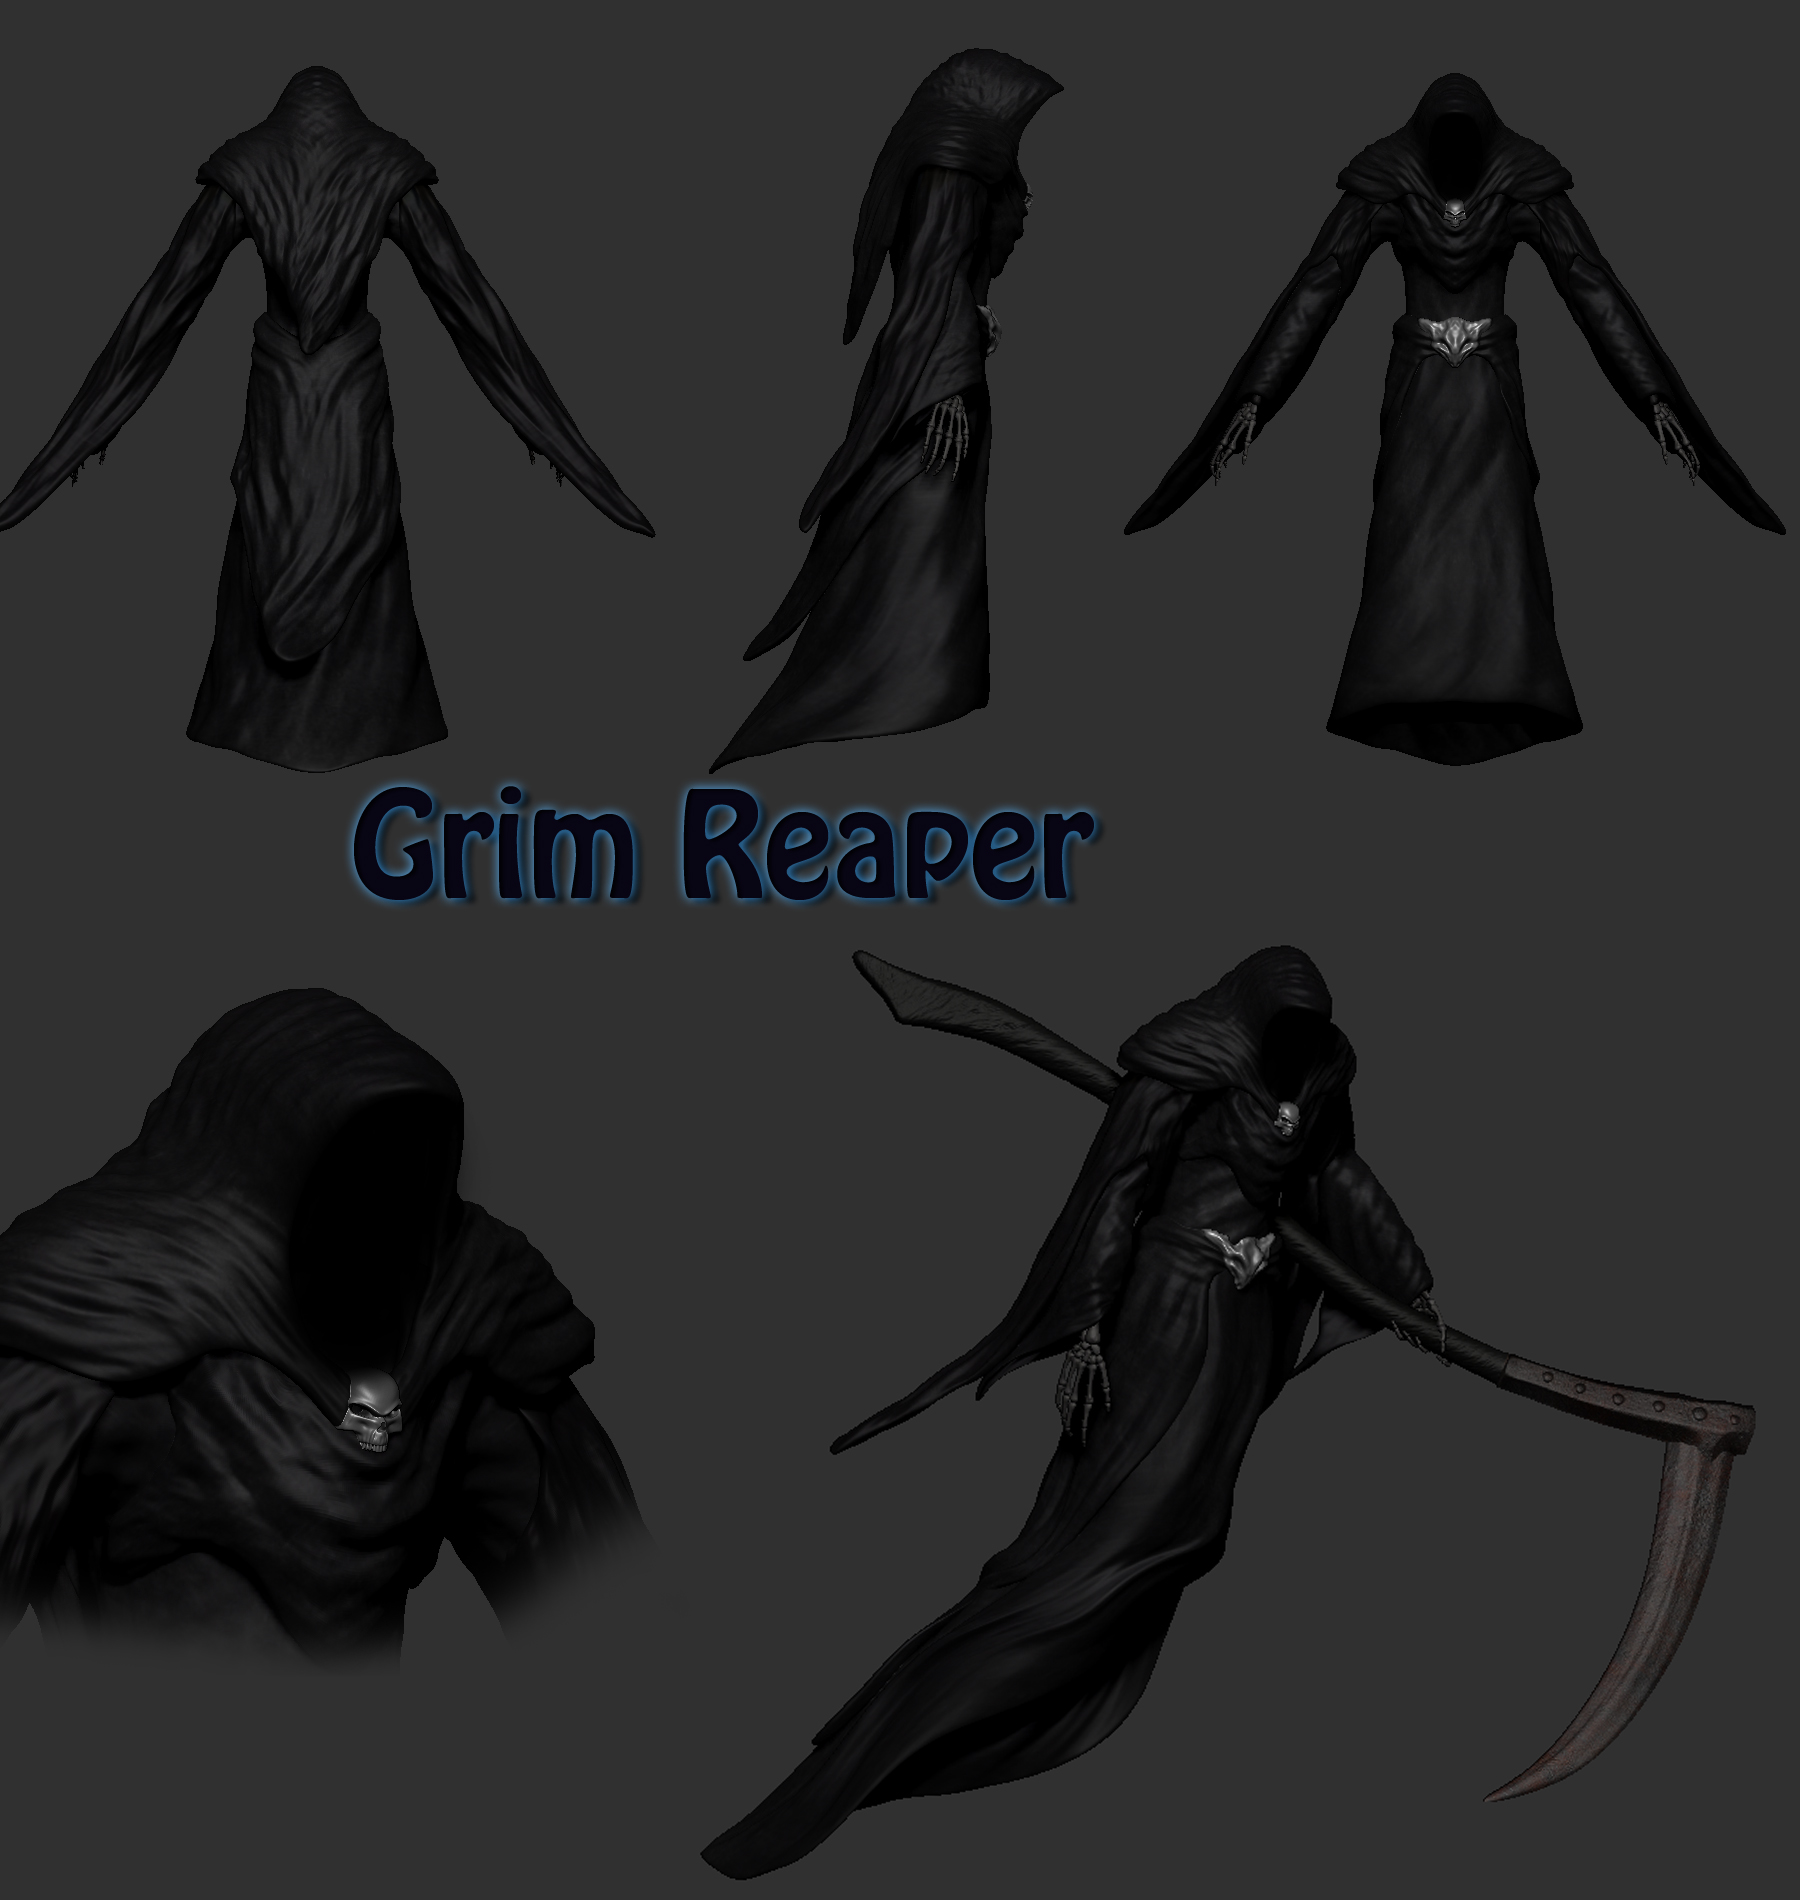 ...https://www.moddb.com/members/drogoth/images/the-grim-reaper#